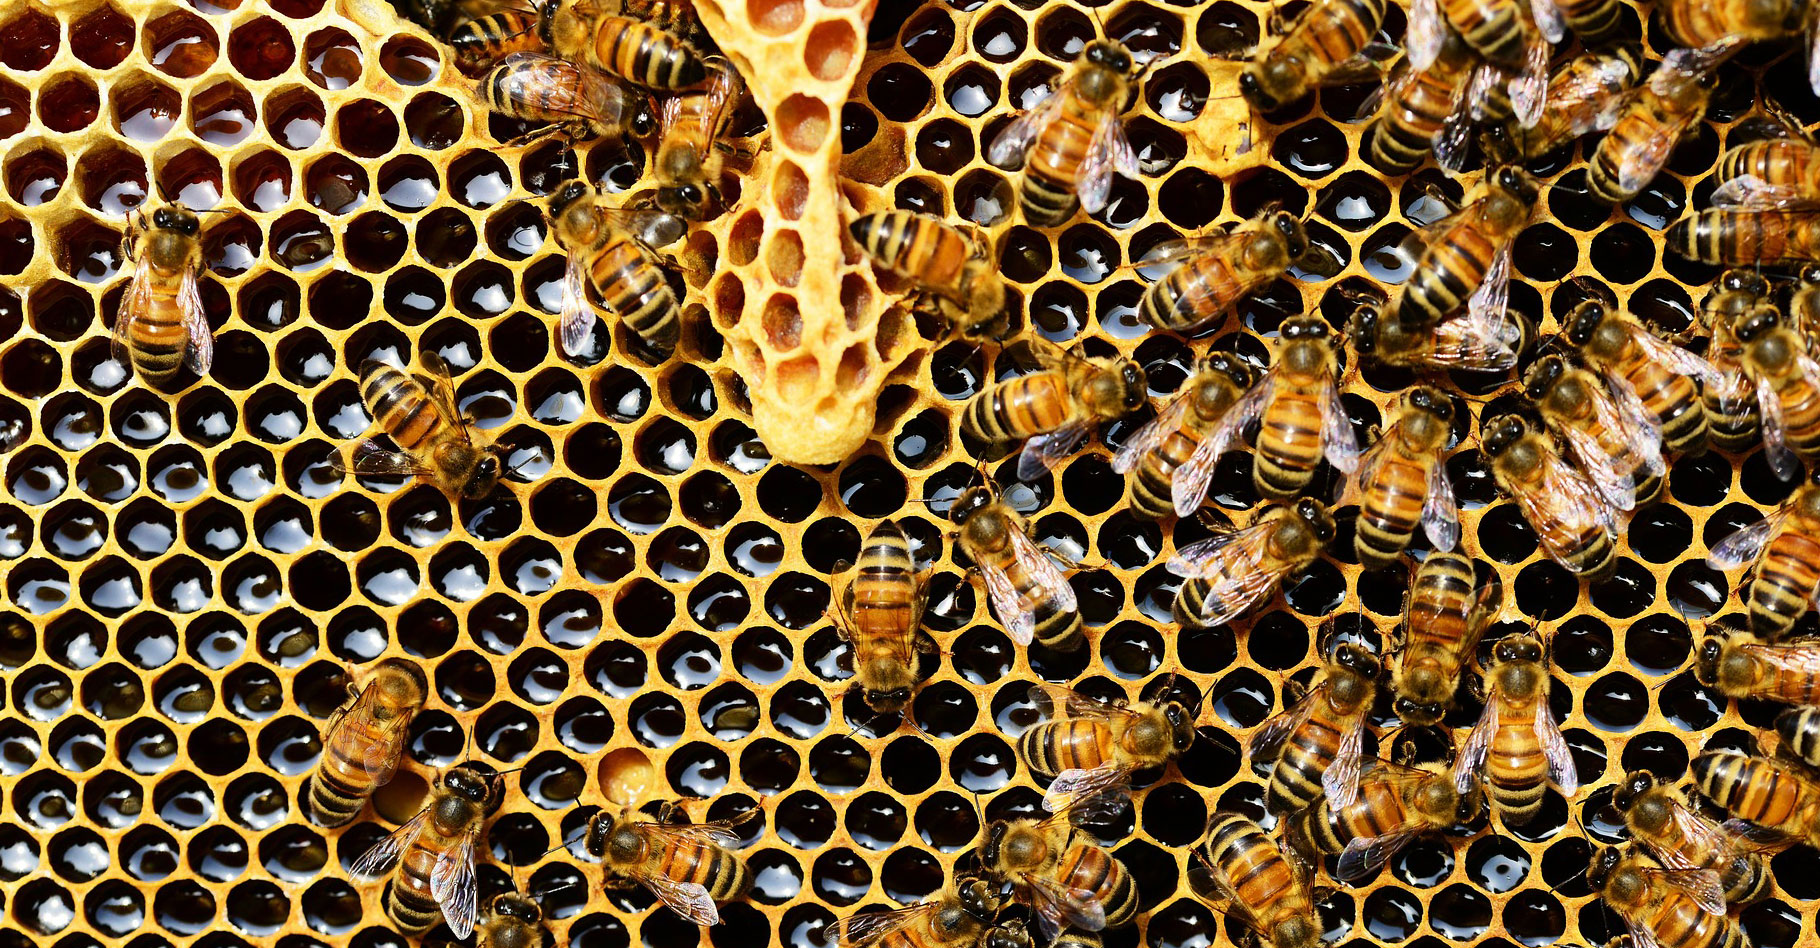 Les alvéoles d'une ruche.© PollyDot, Pixabay, DP